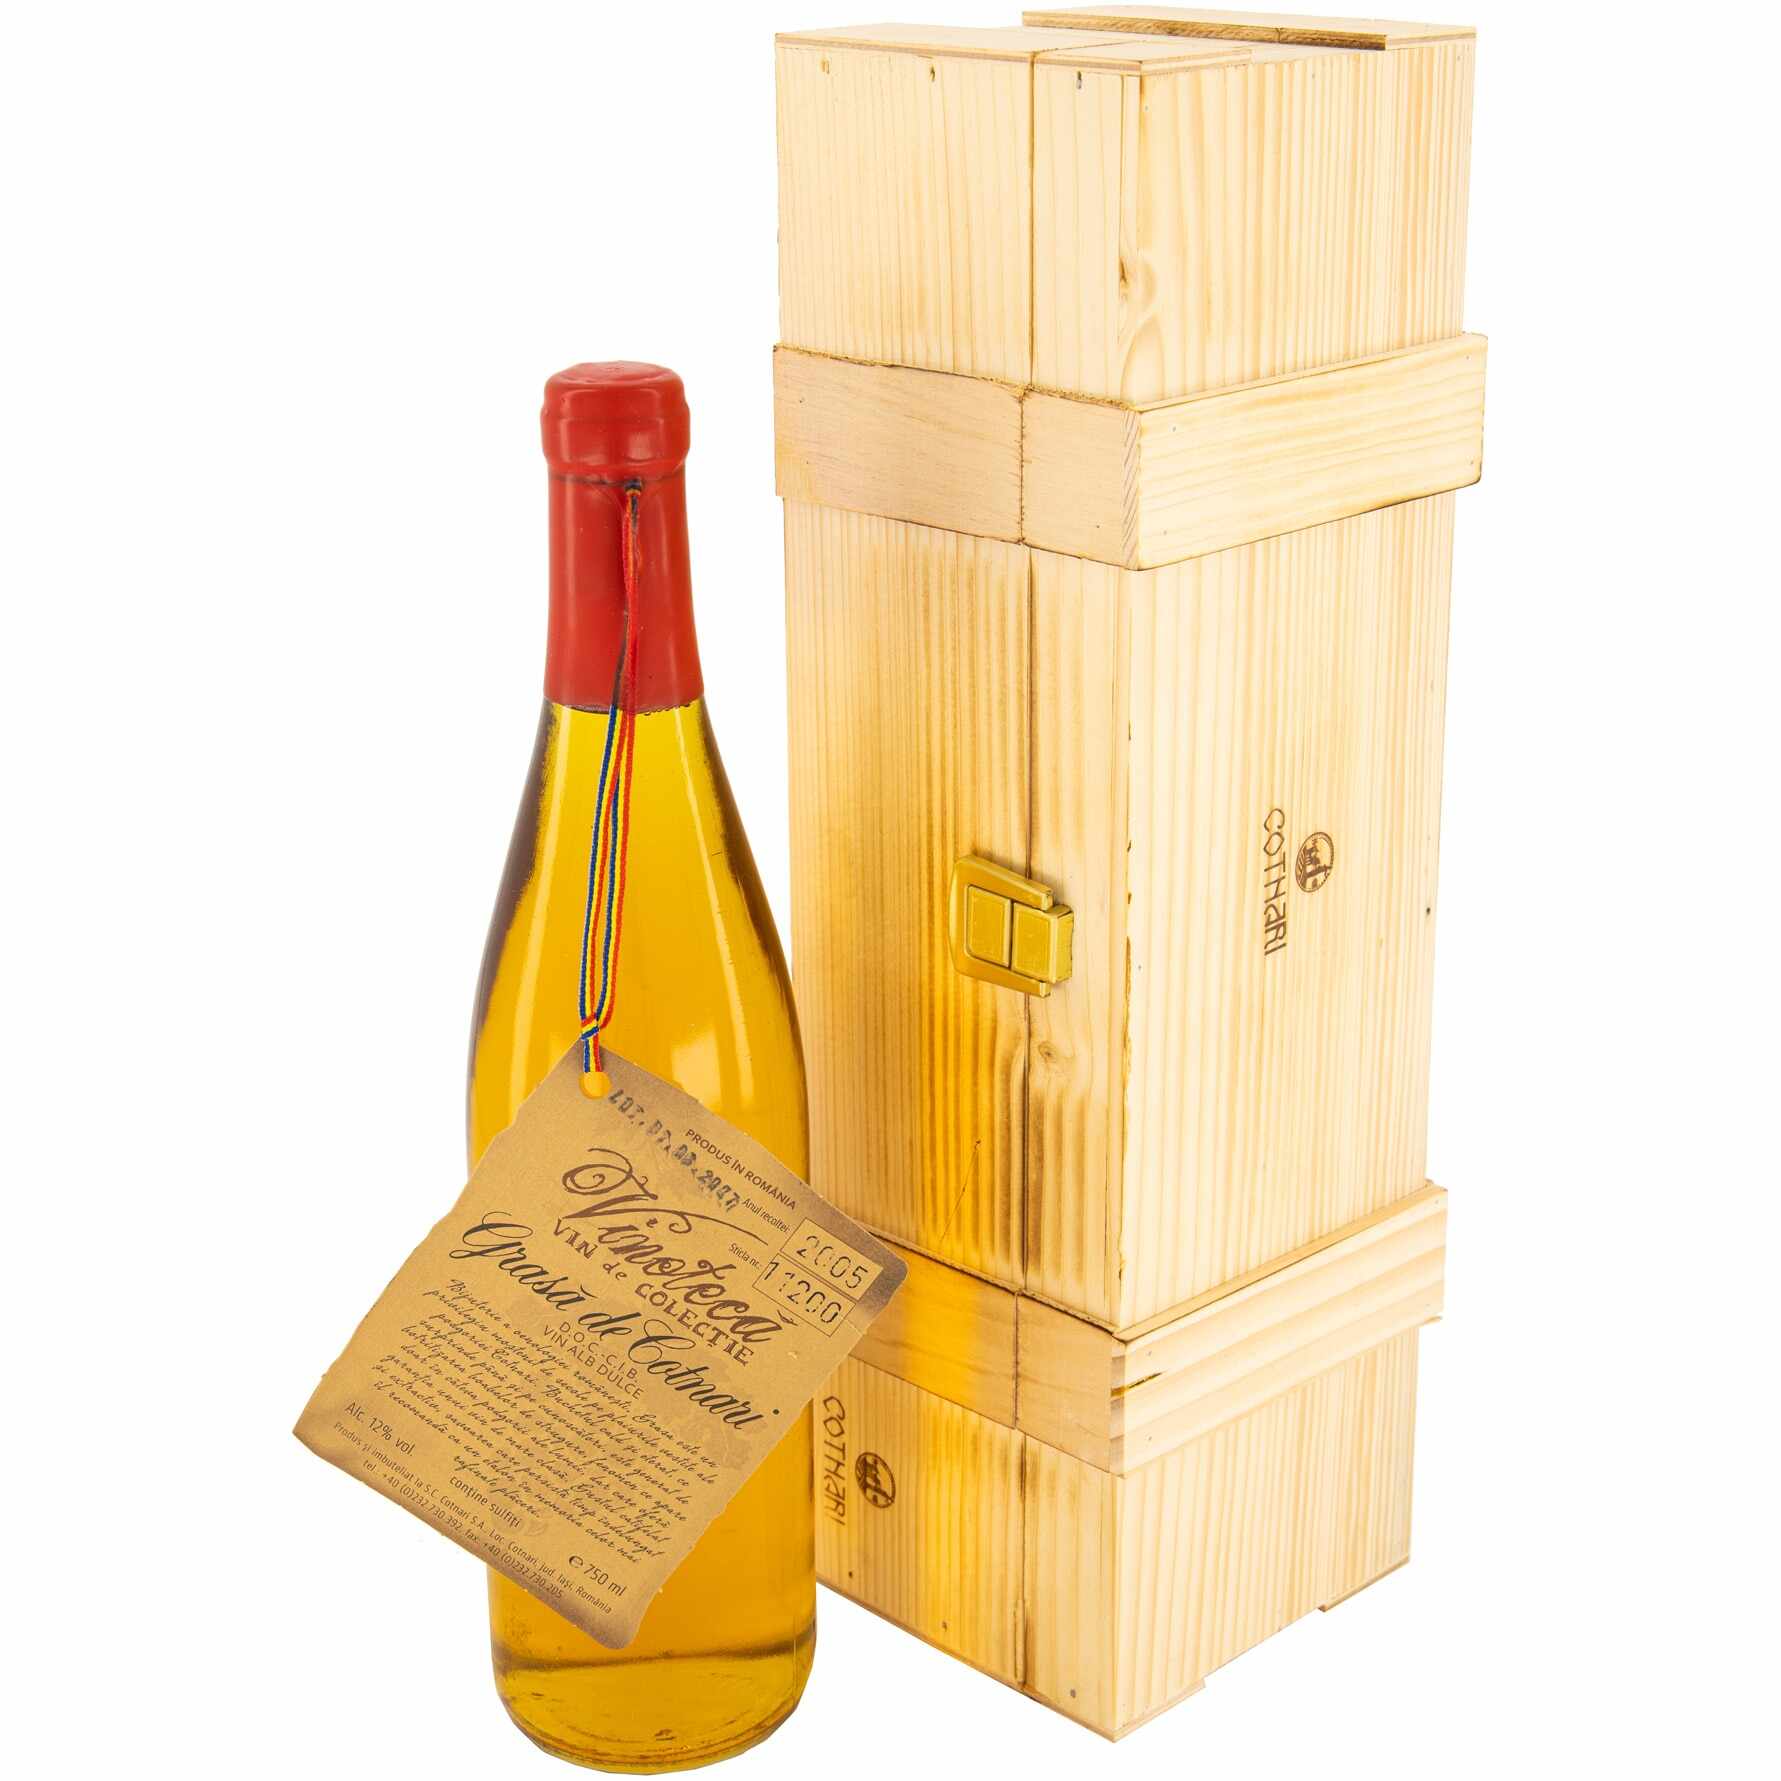 Vin Alb de Vinoteca Grasa de Cotnari, 2005, Dulce, 12%, 0.75l, Cutie de lemn